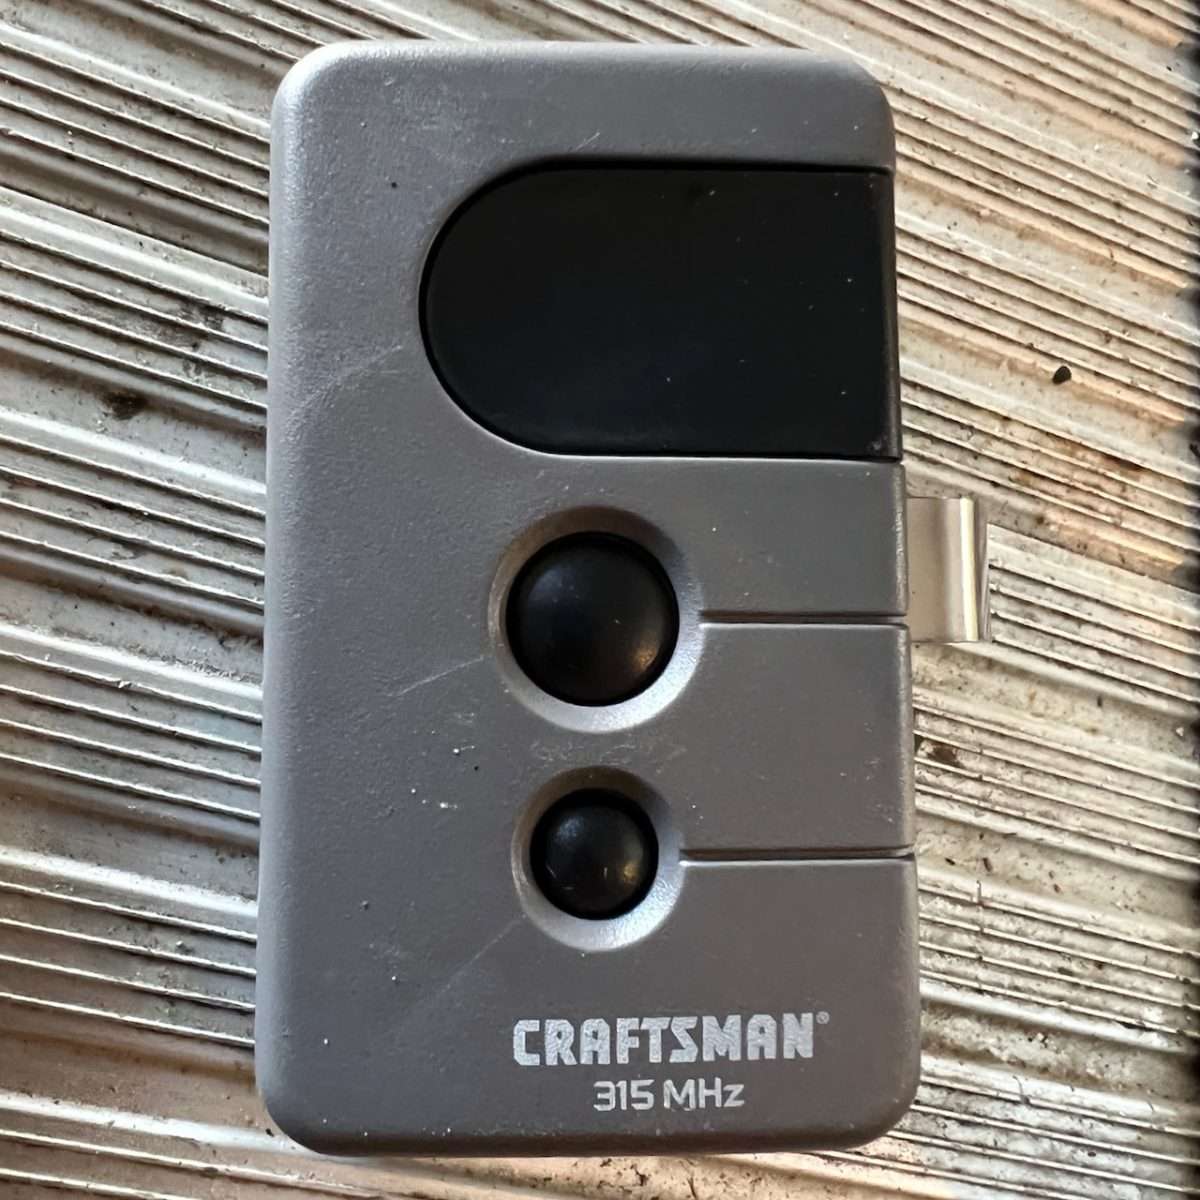 Craftsman garage door opener remote.